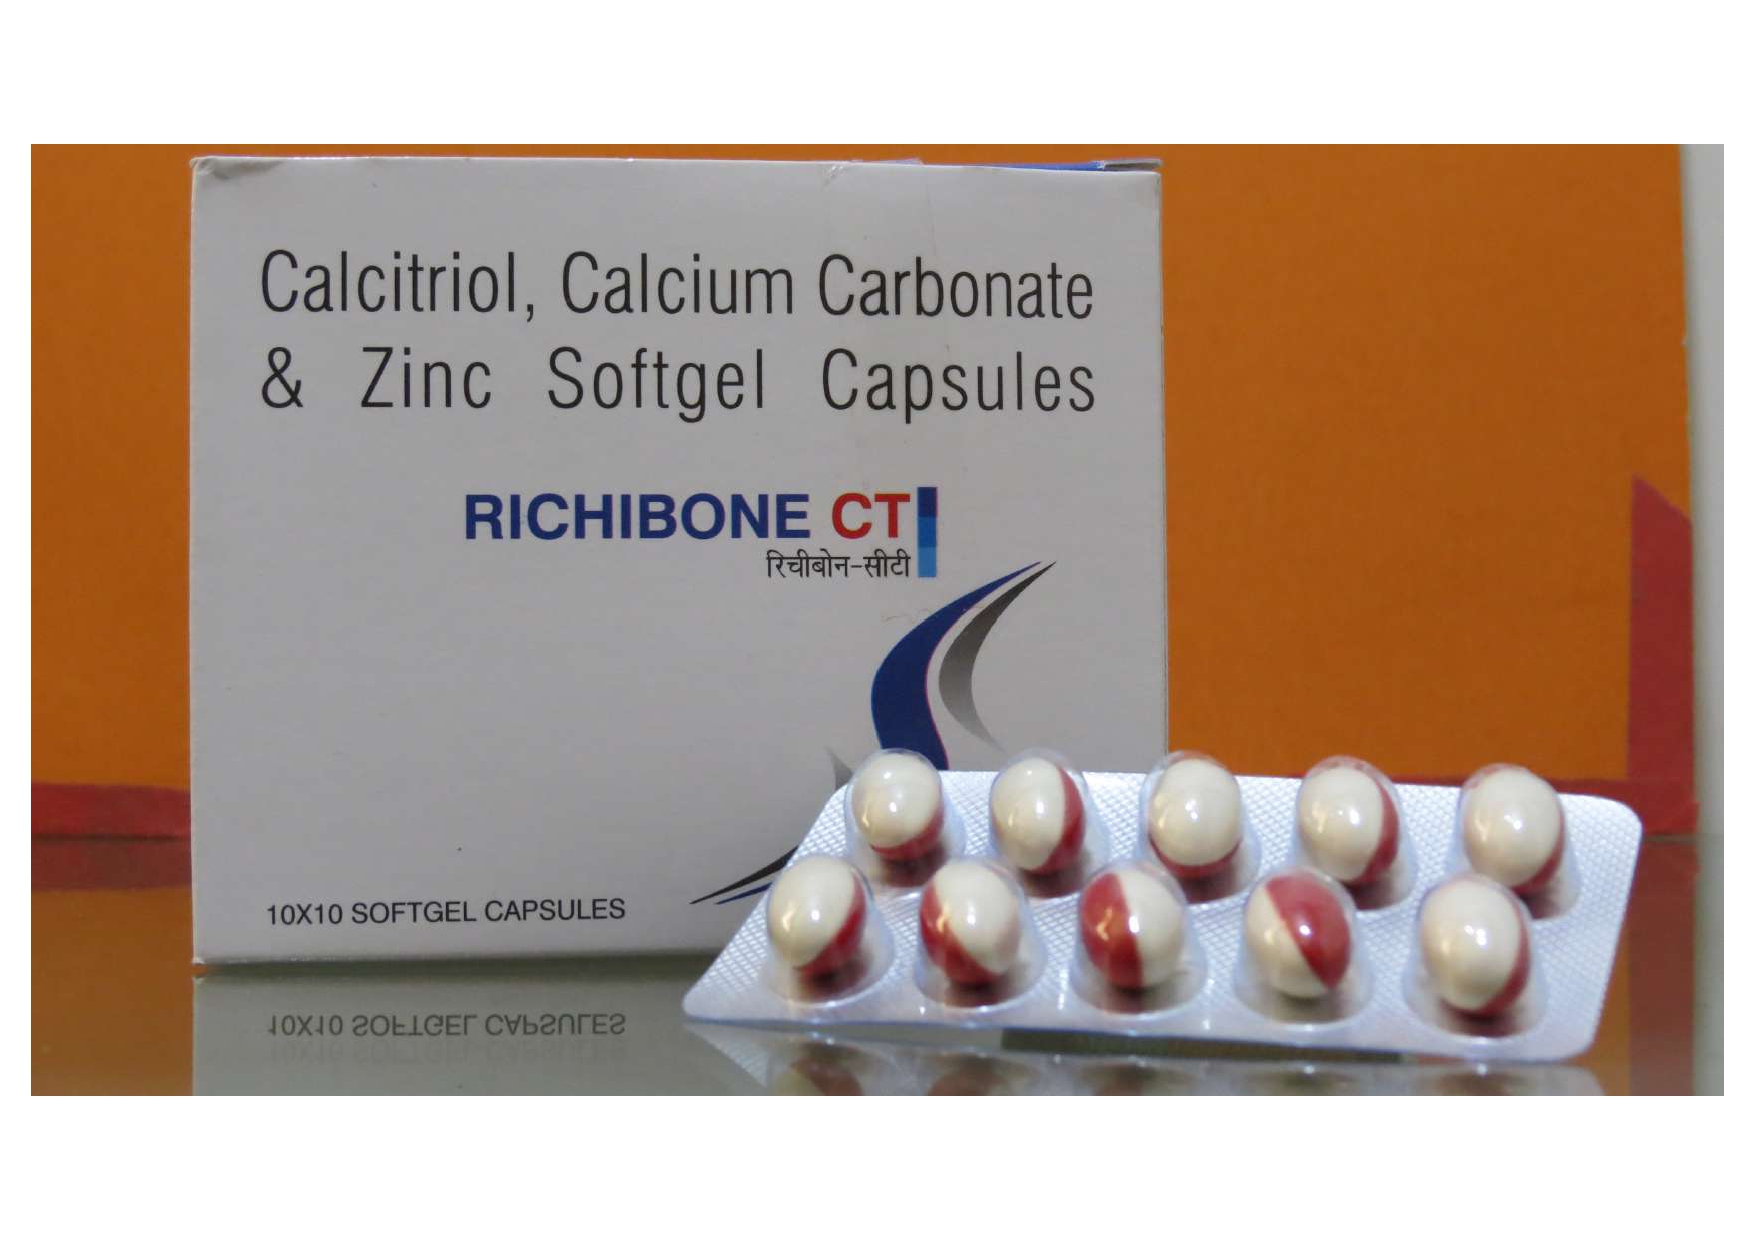 calcium carbonate 500mg + calcitrol 0.25mcg + zinc 7.5 mg capsules